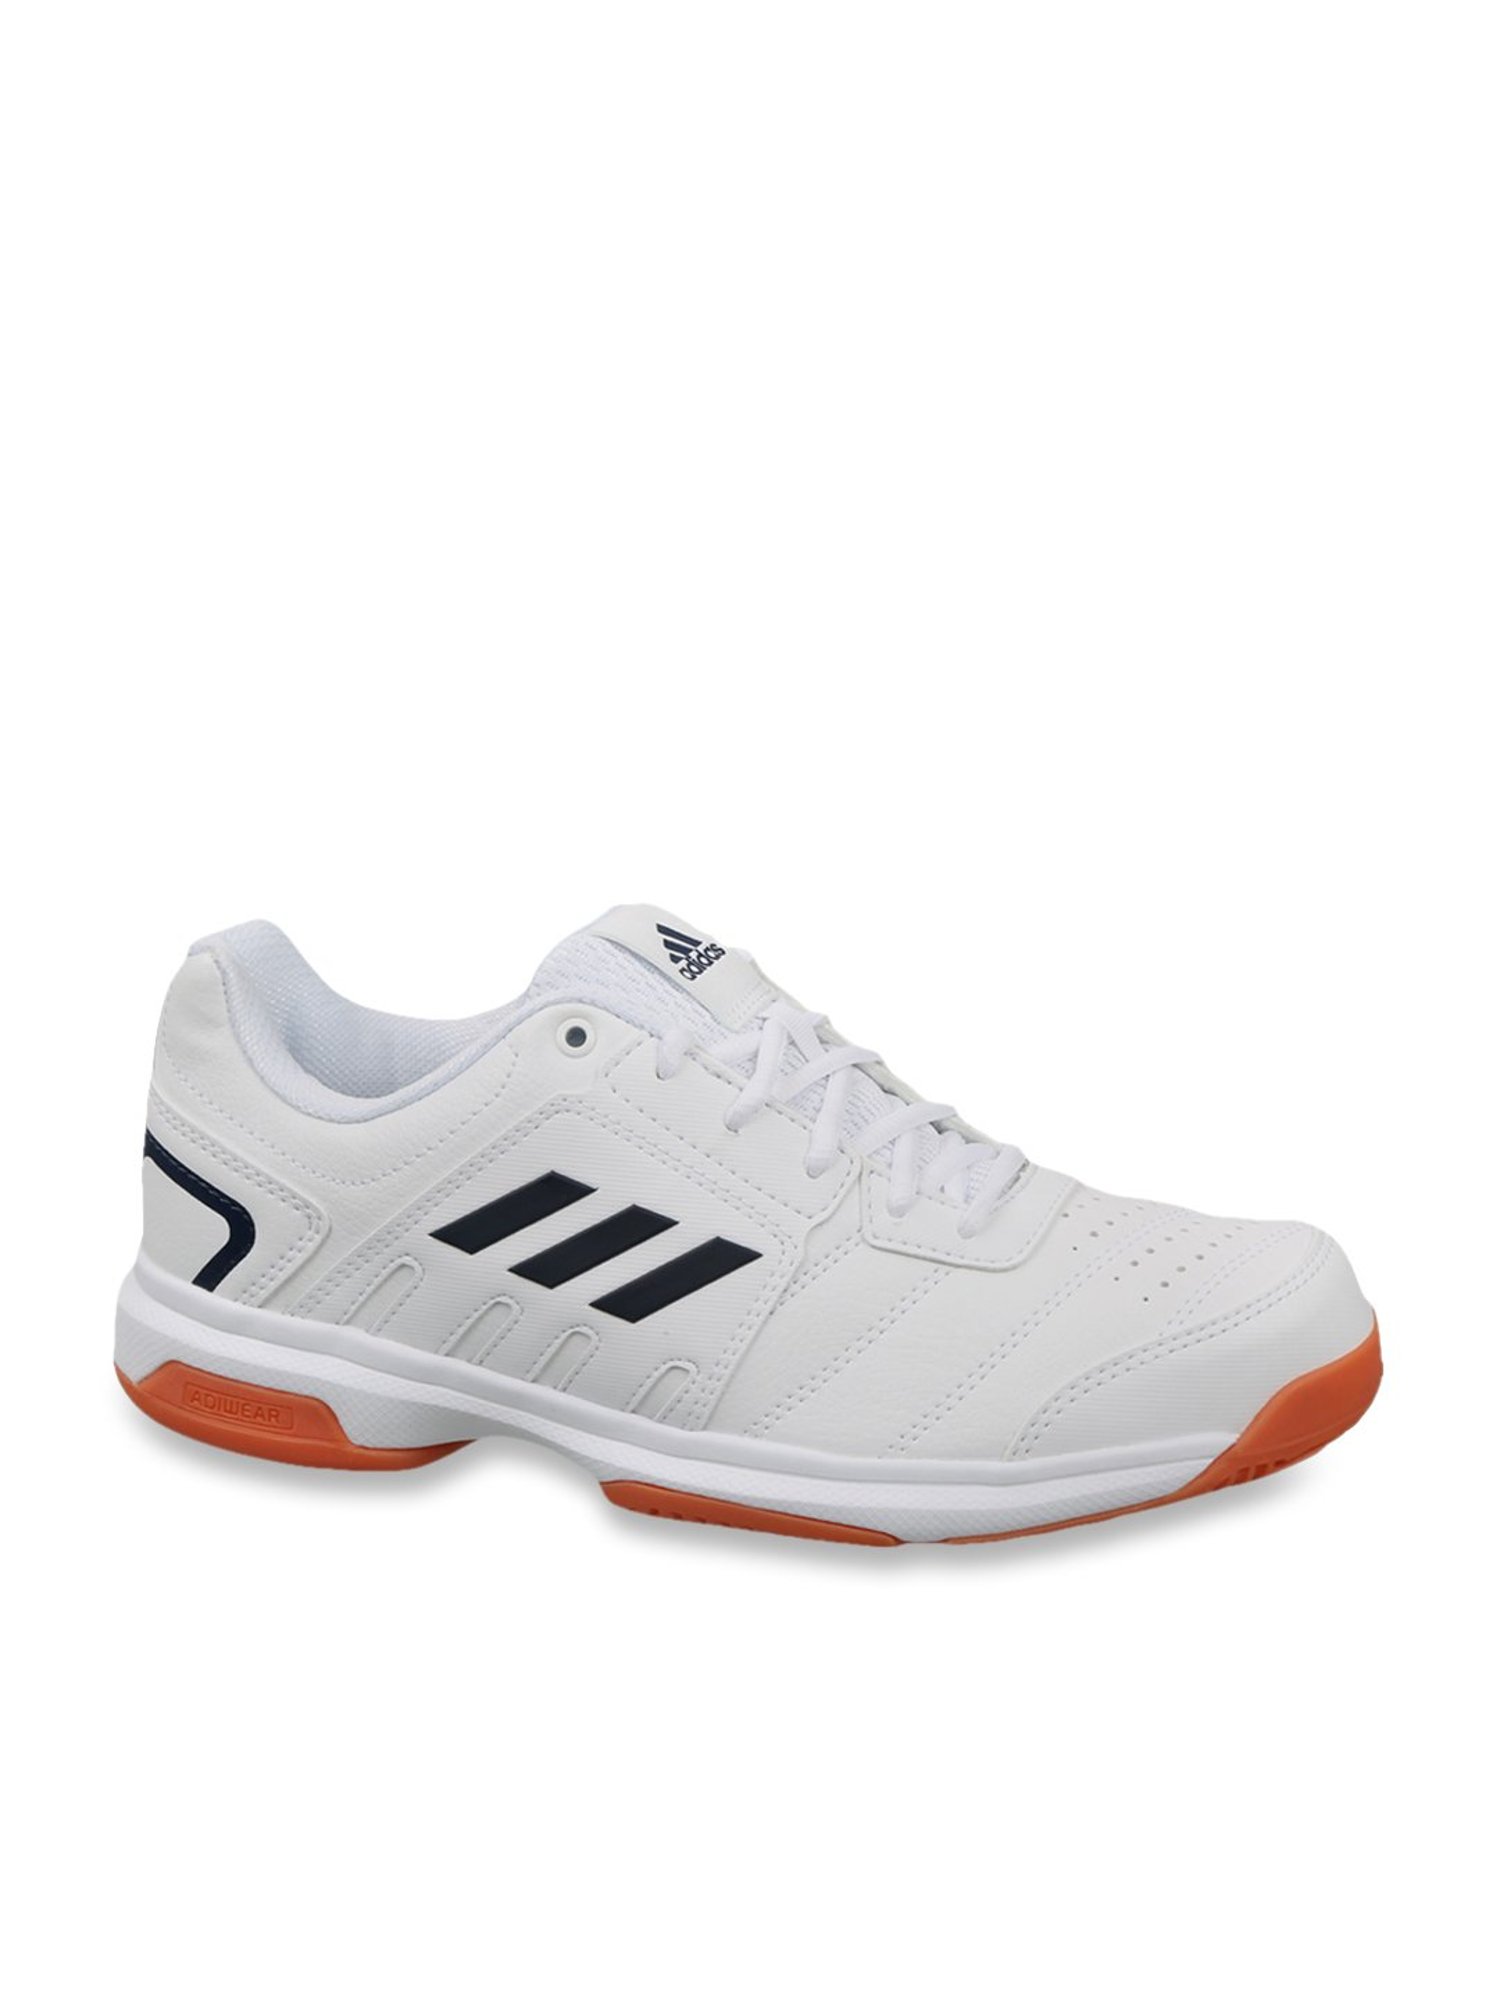 adidas white baseline shoes